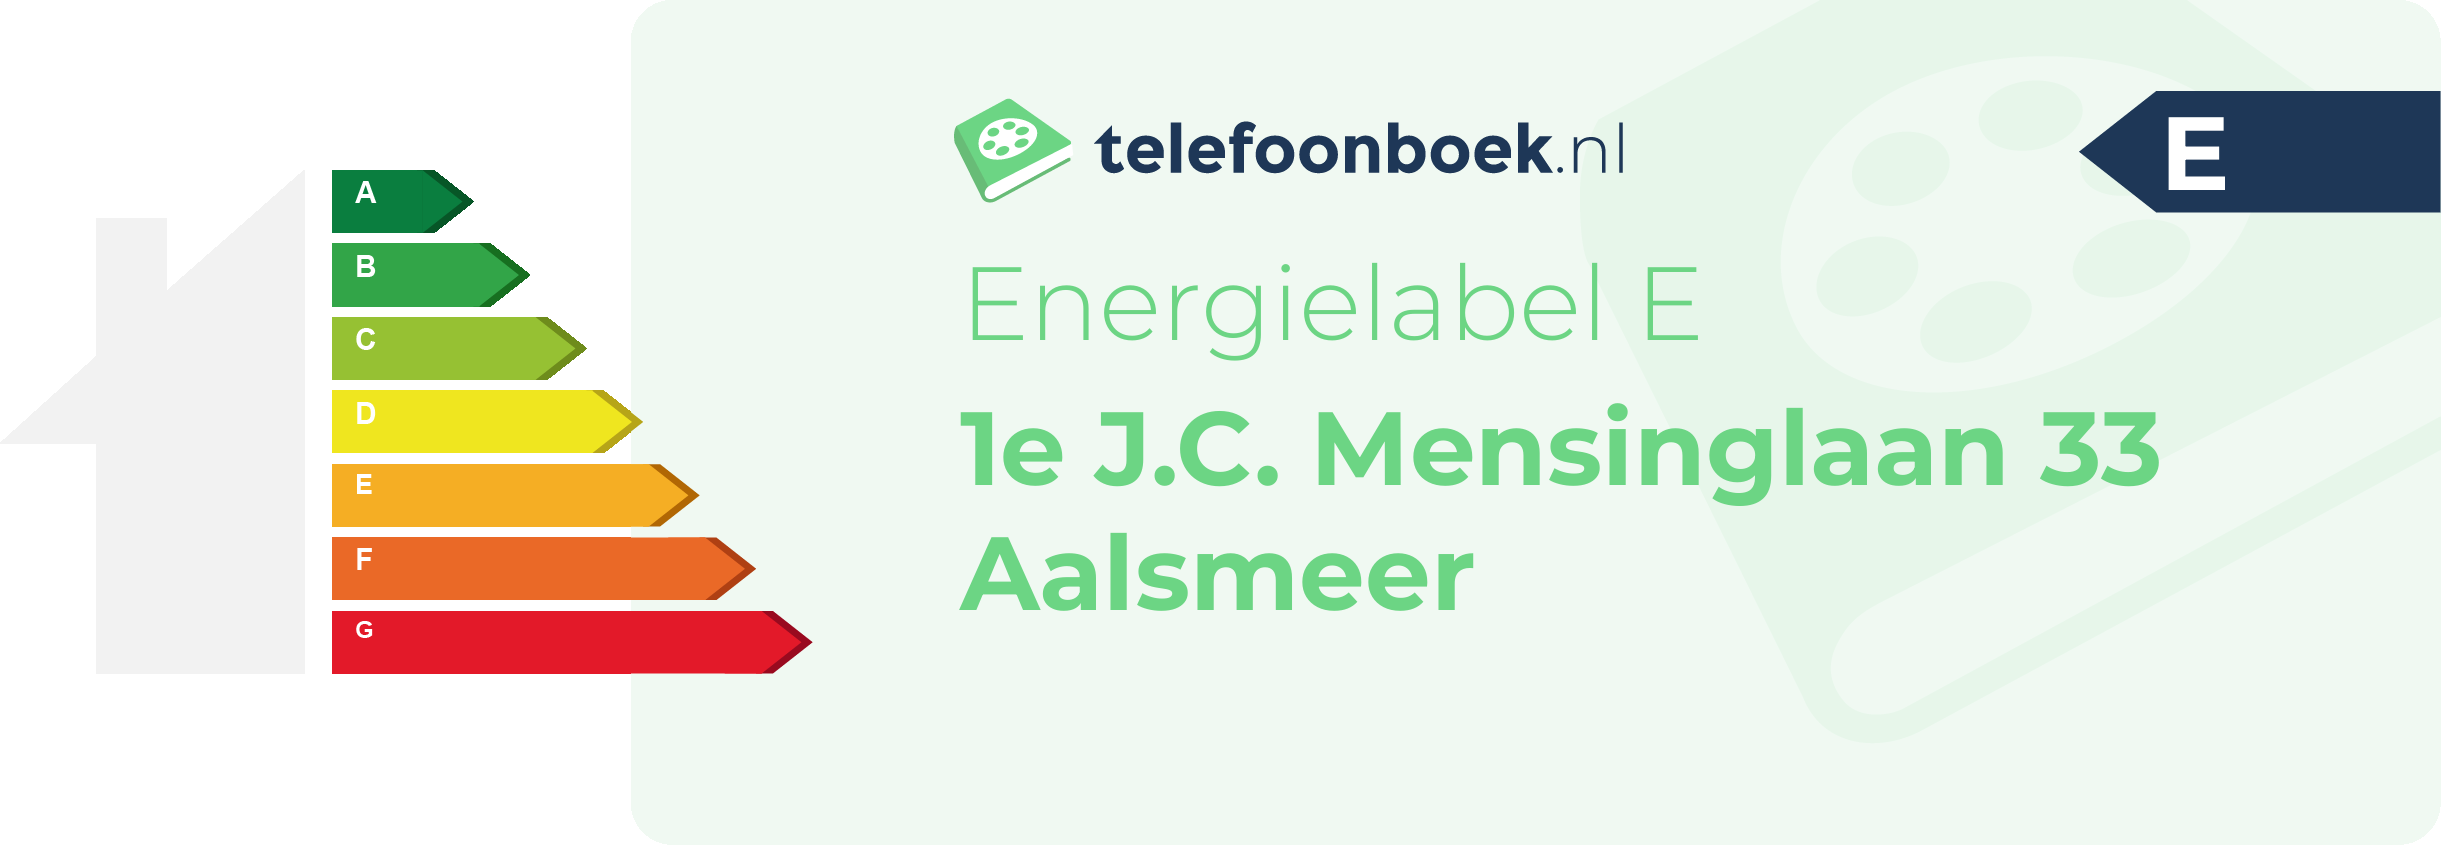 Energielabel 1e J.C. Mensinglaan 33 Aalsmeer